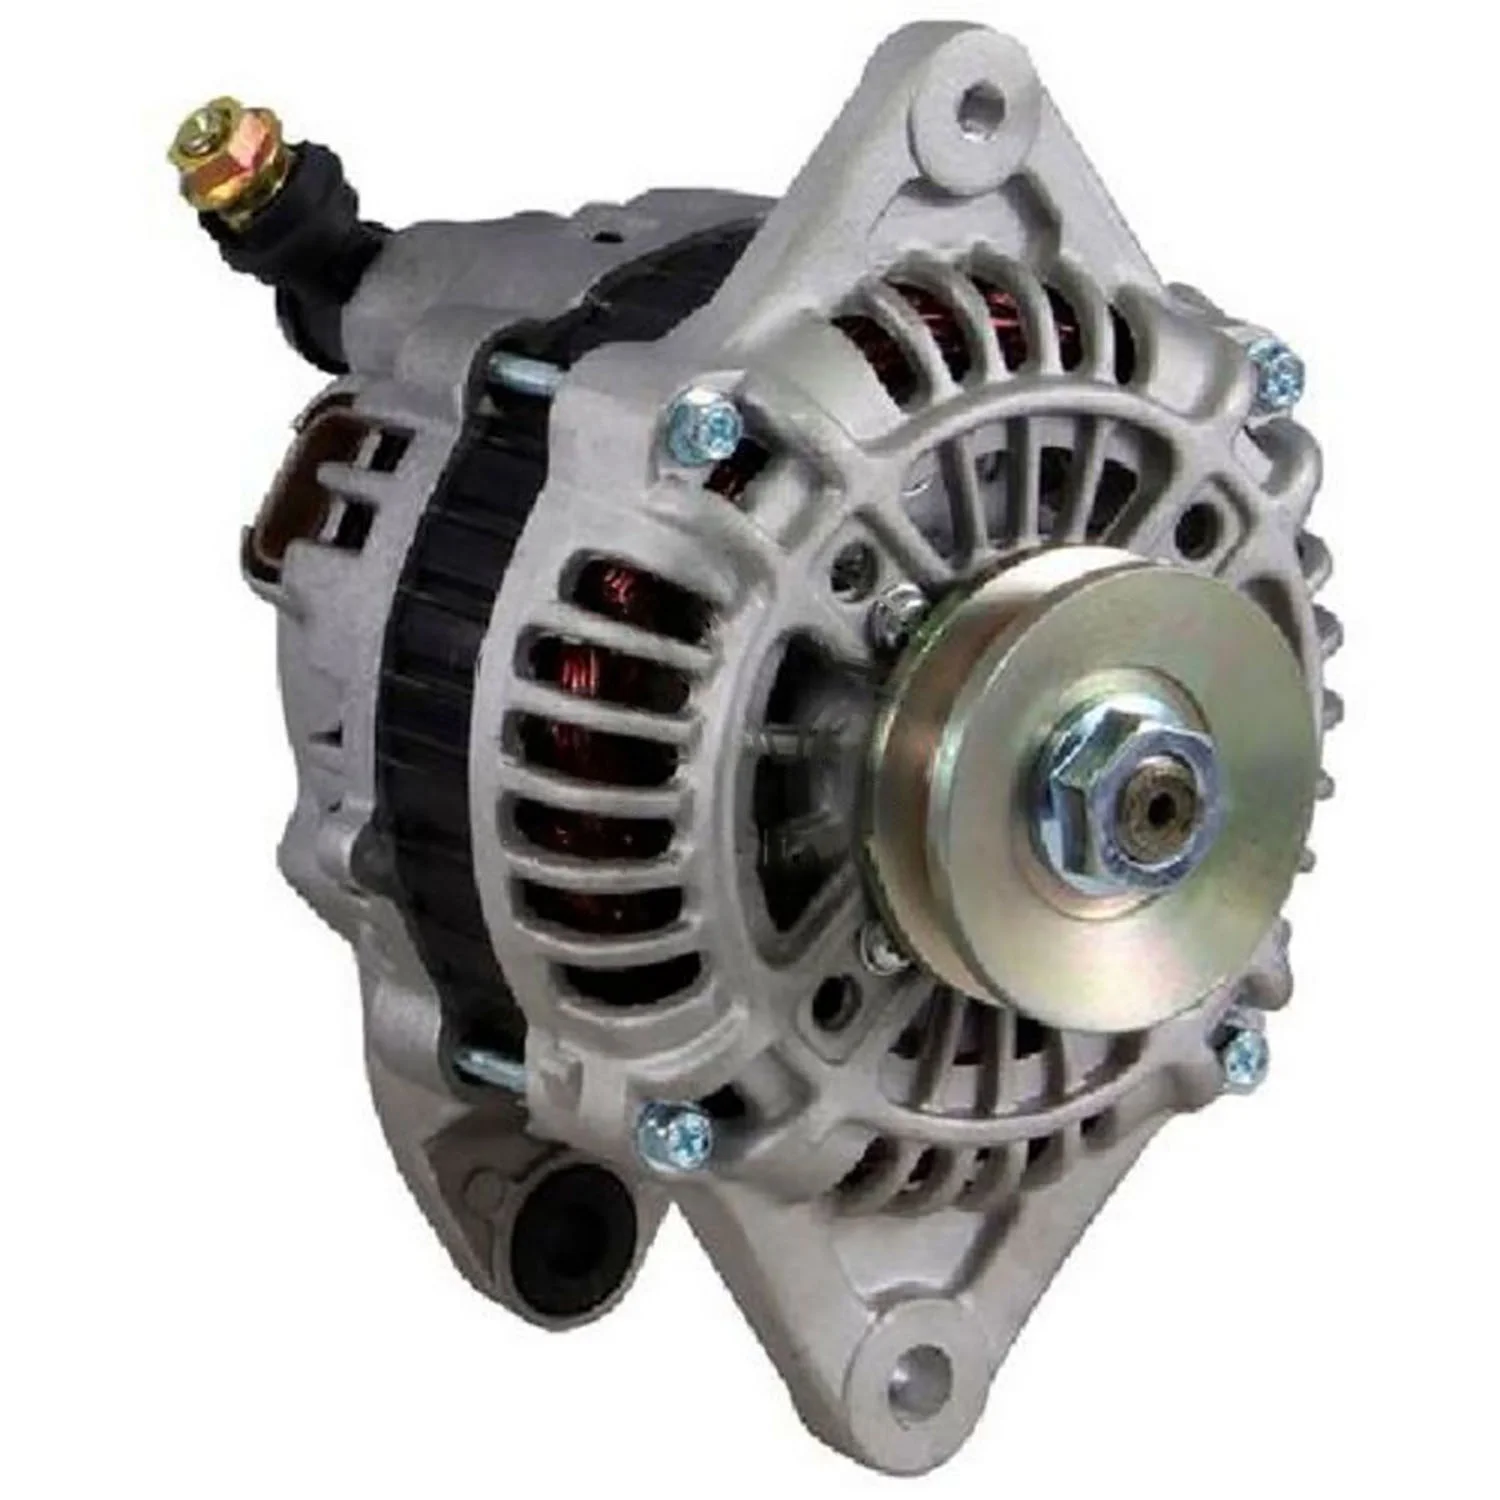 

Auto Dynamo Alternator Generator For Ford MZD Mitsubishi VLEO 112100 E9JY10300AA ALM1177UX F2E818300 FE2818300 JE1518300